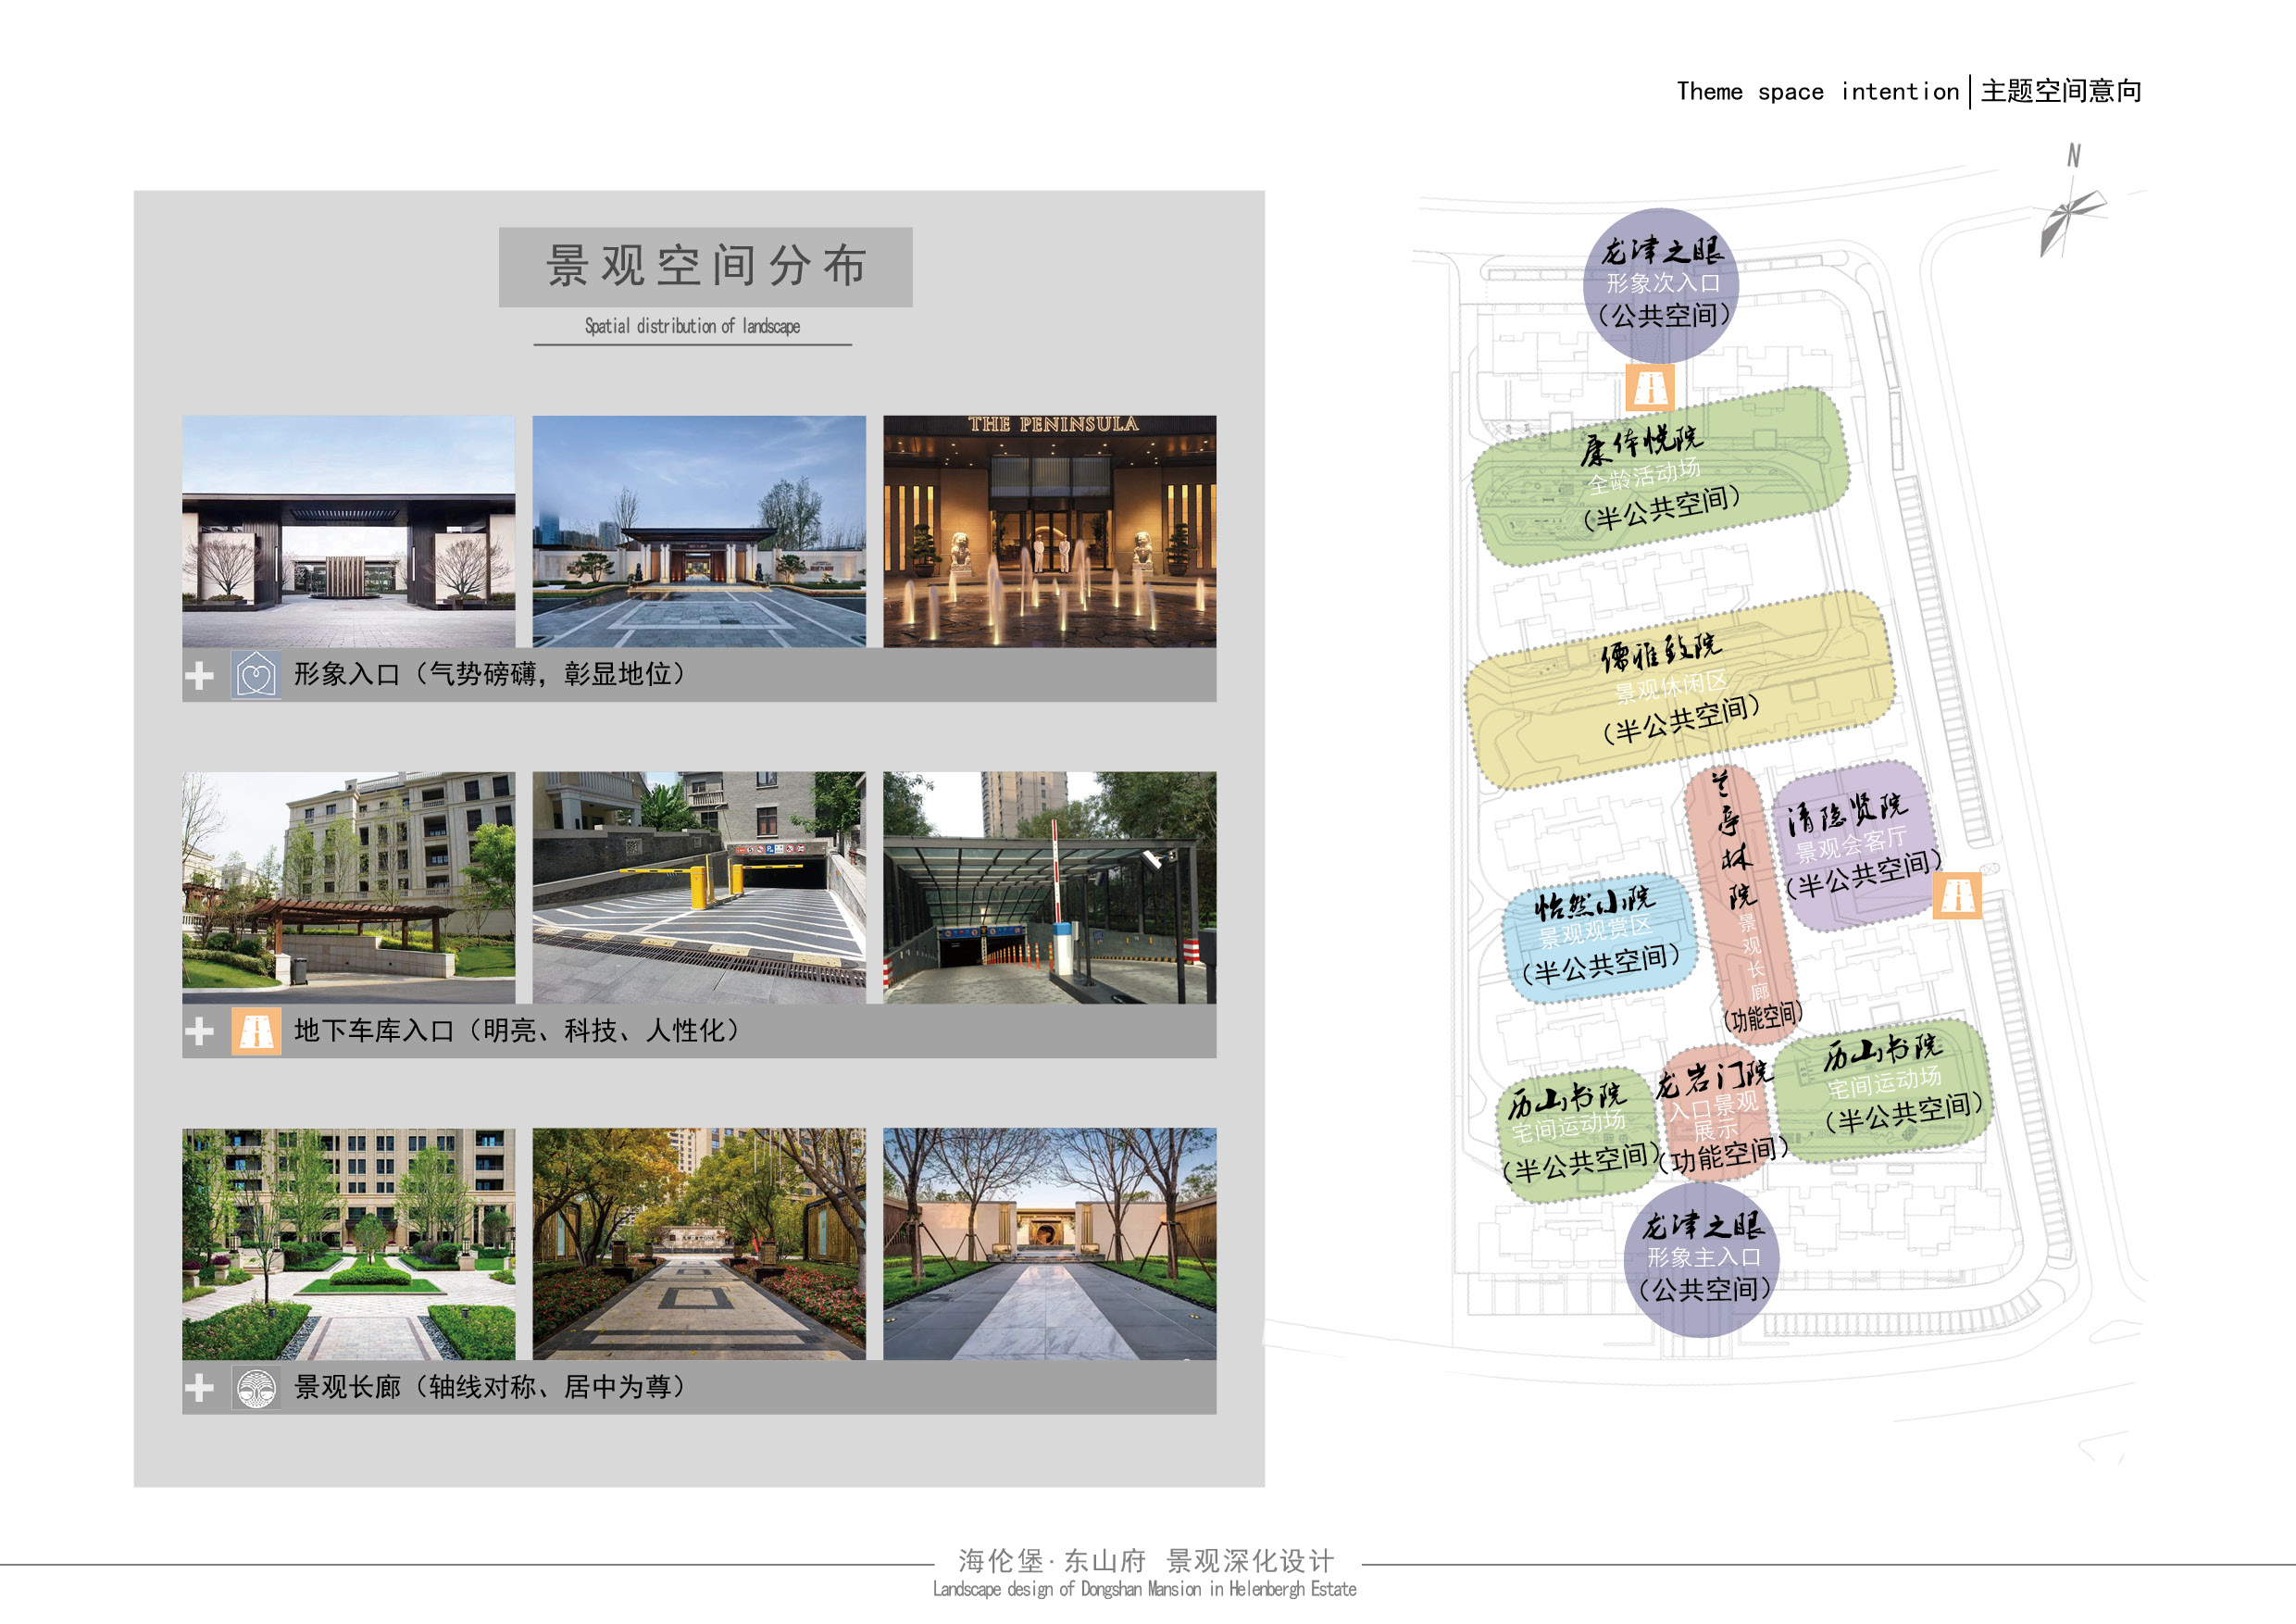 酒店式入口宅院-全龄化成长空间社区景观深化设计方案文本_0021.jpg